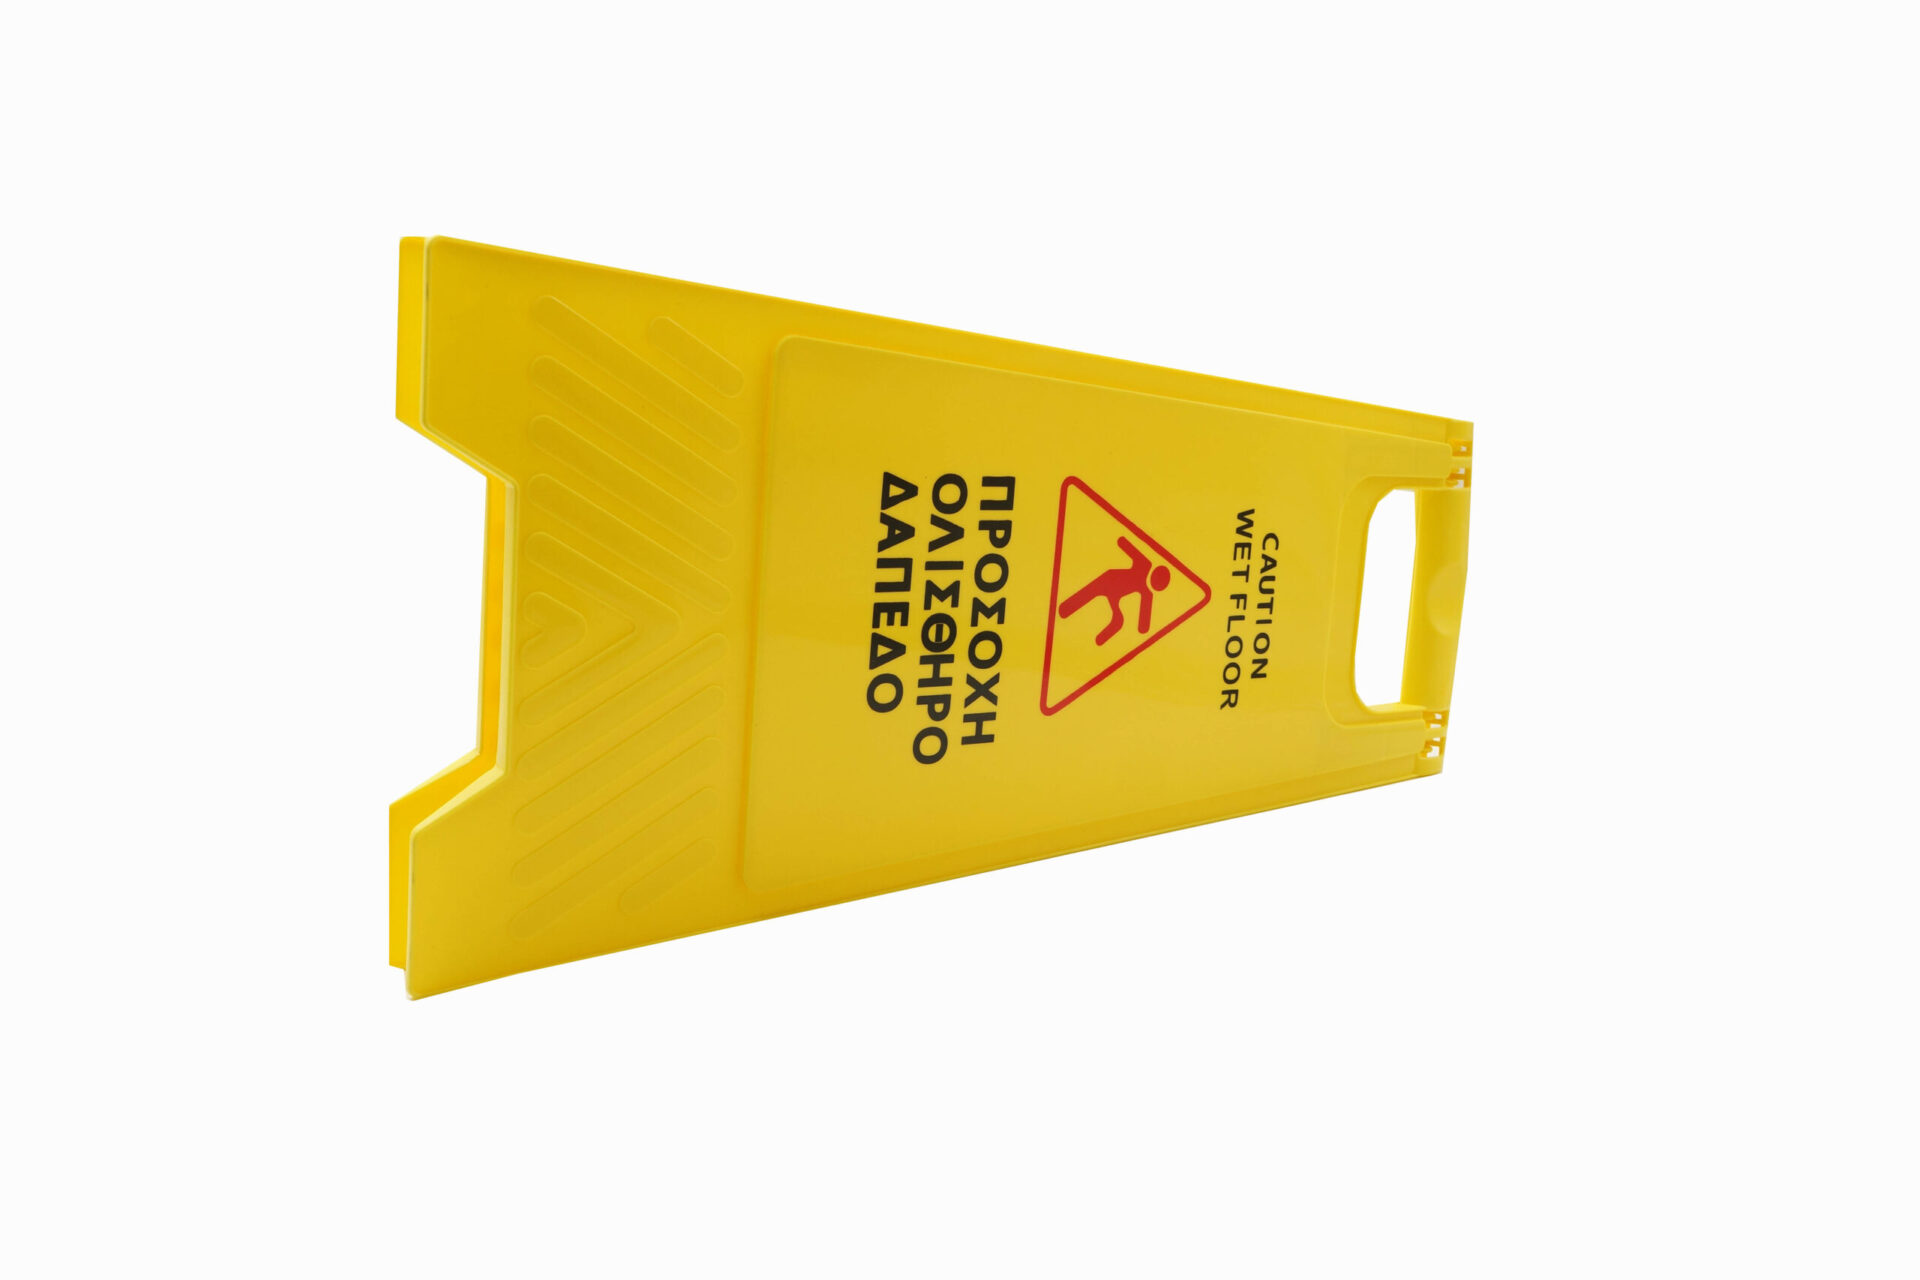 Προειδοποιητική Πινακίδα Κίτρινη Wet Floor